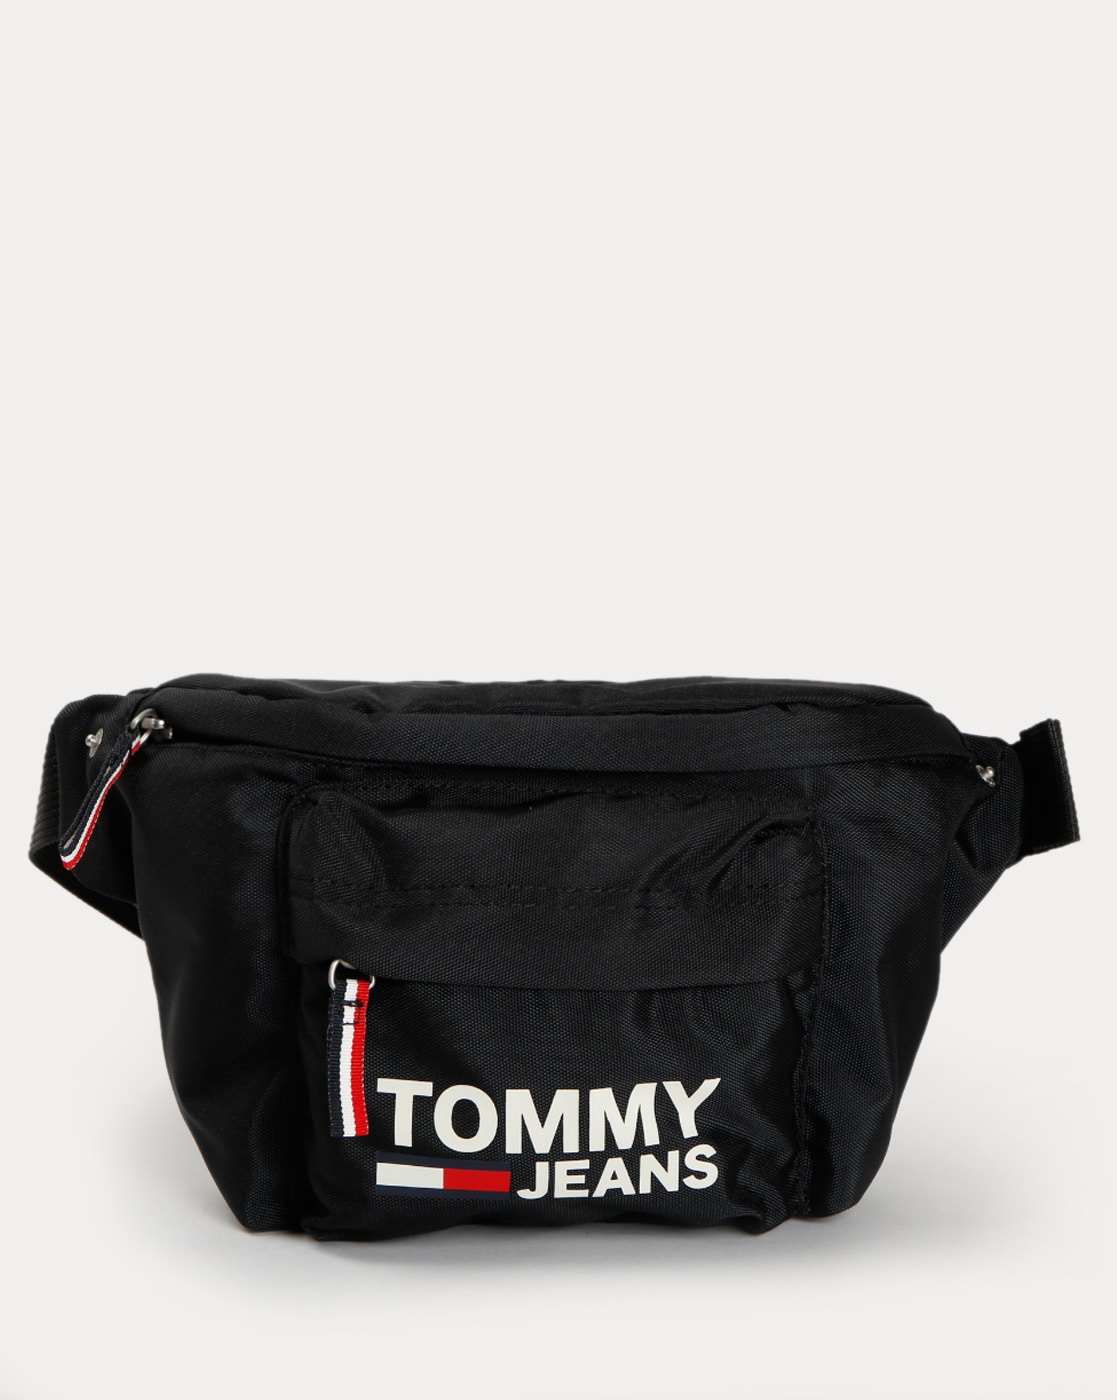 Purchase \u003e waist bag tommy hilfiger, Up 